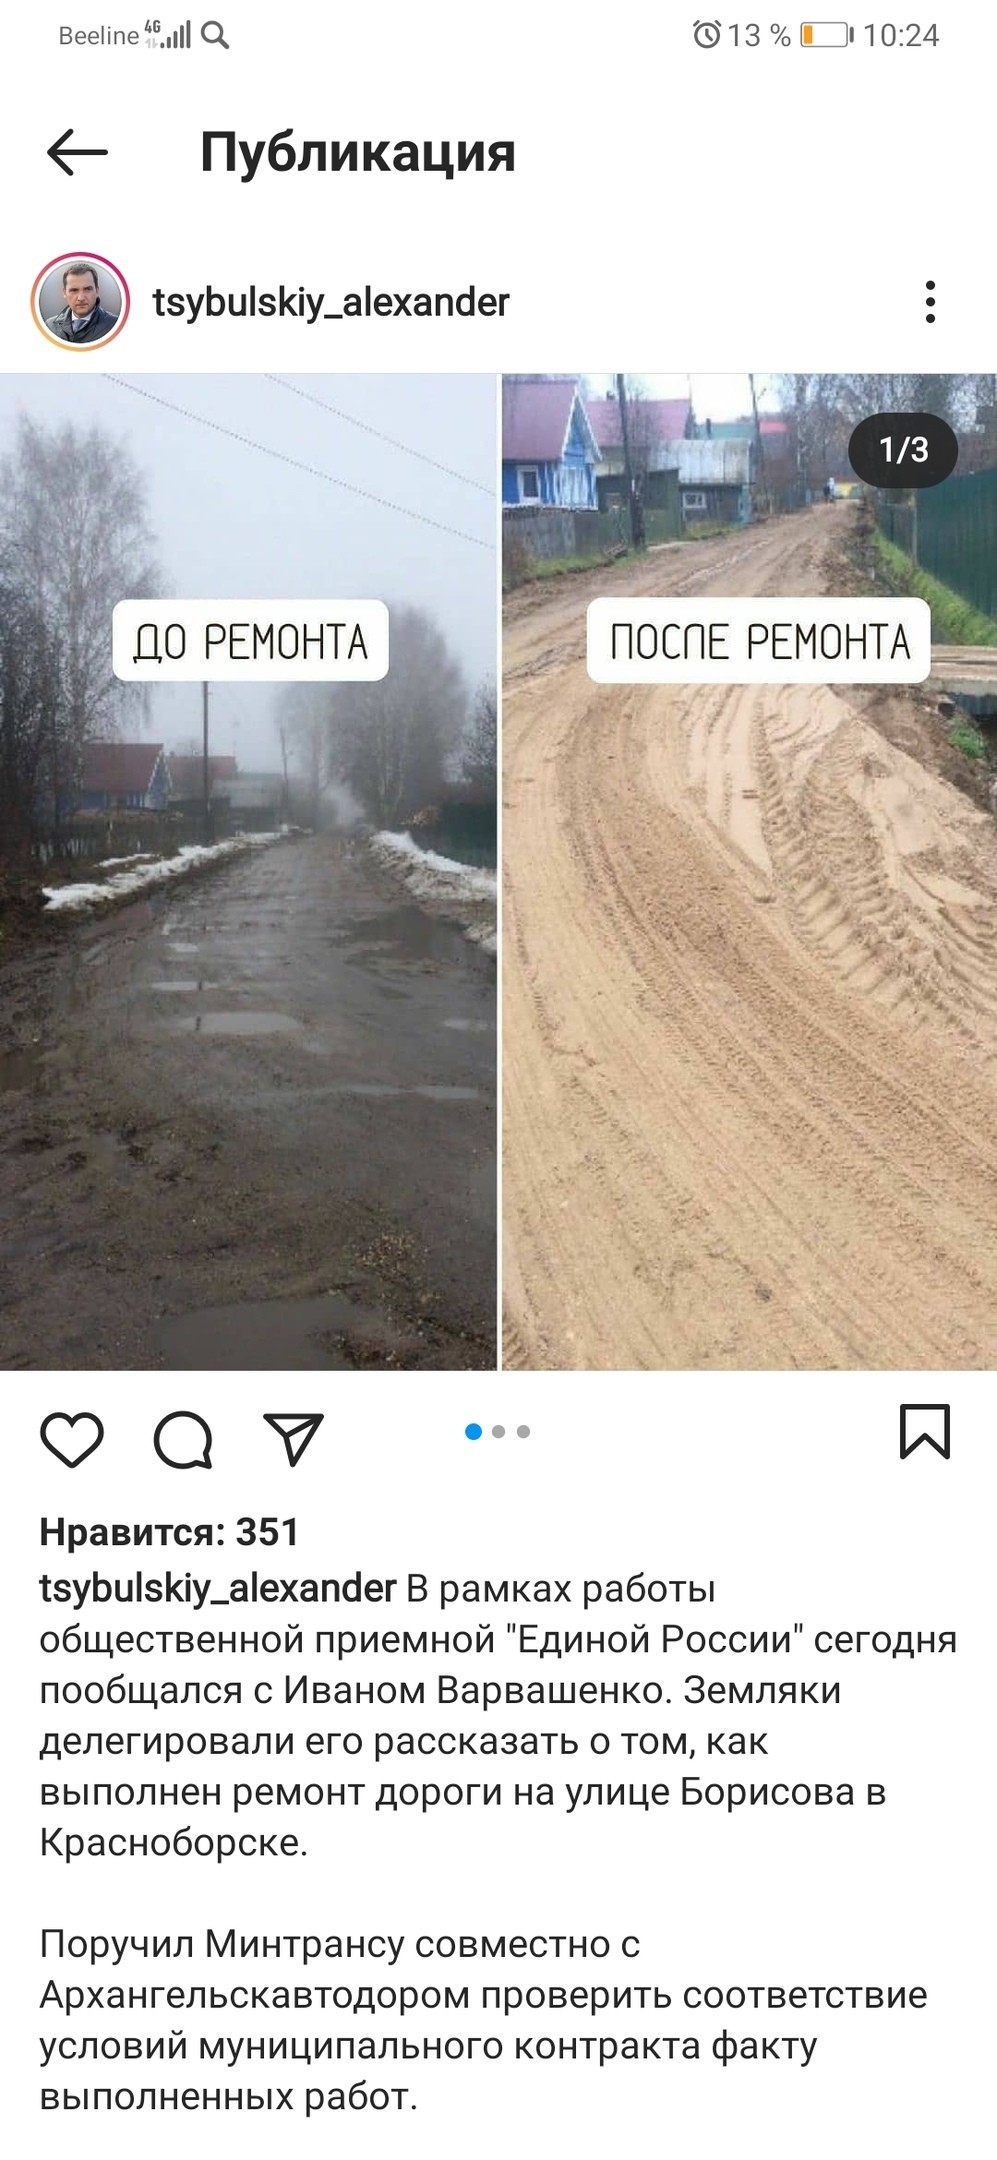 В инстаграмме Александра Цыбульского подписчики не поняли "шутку" про ремонт дороги